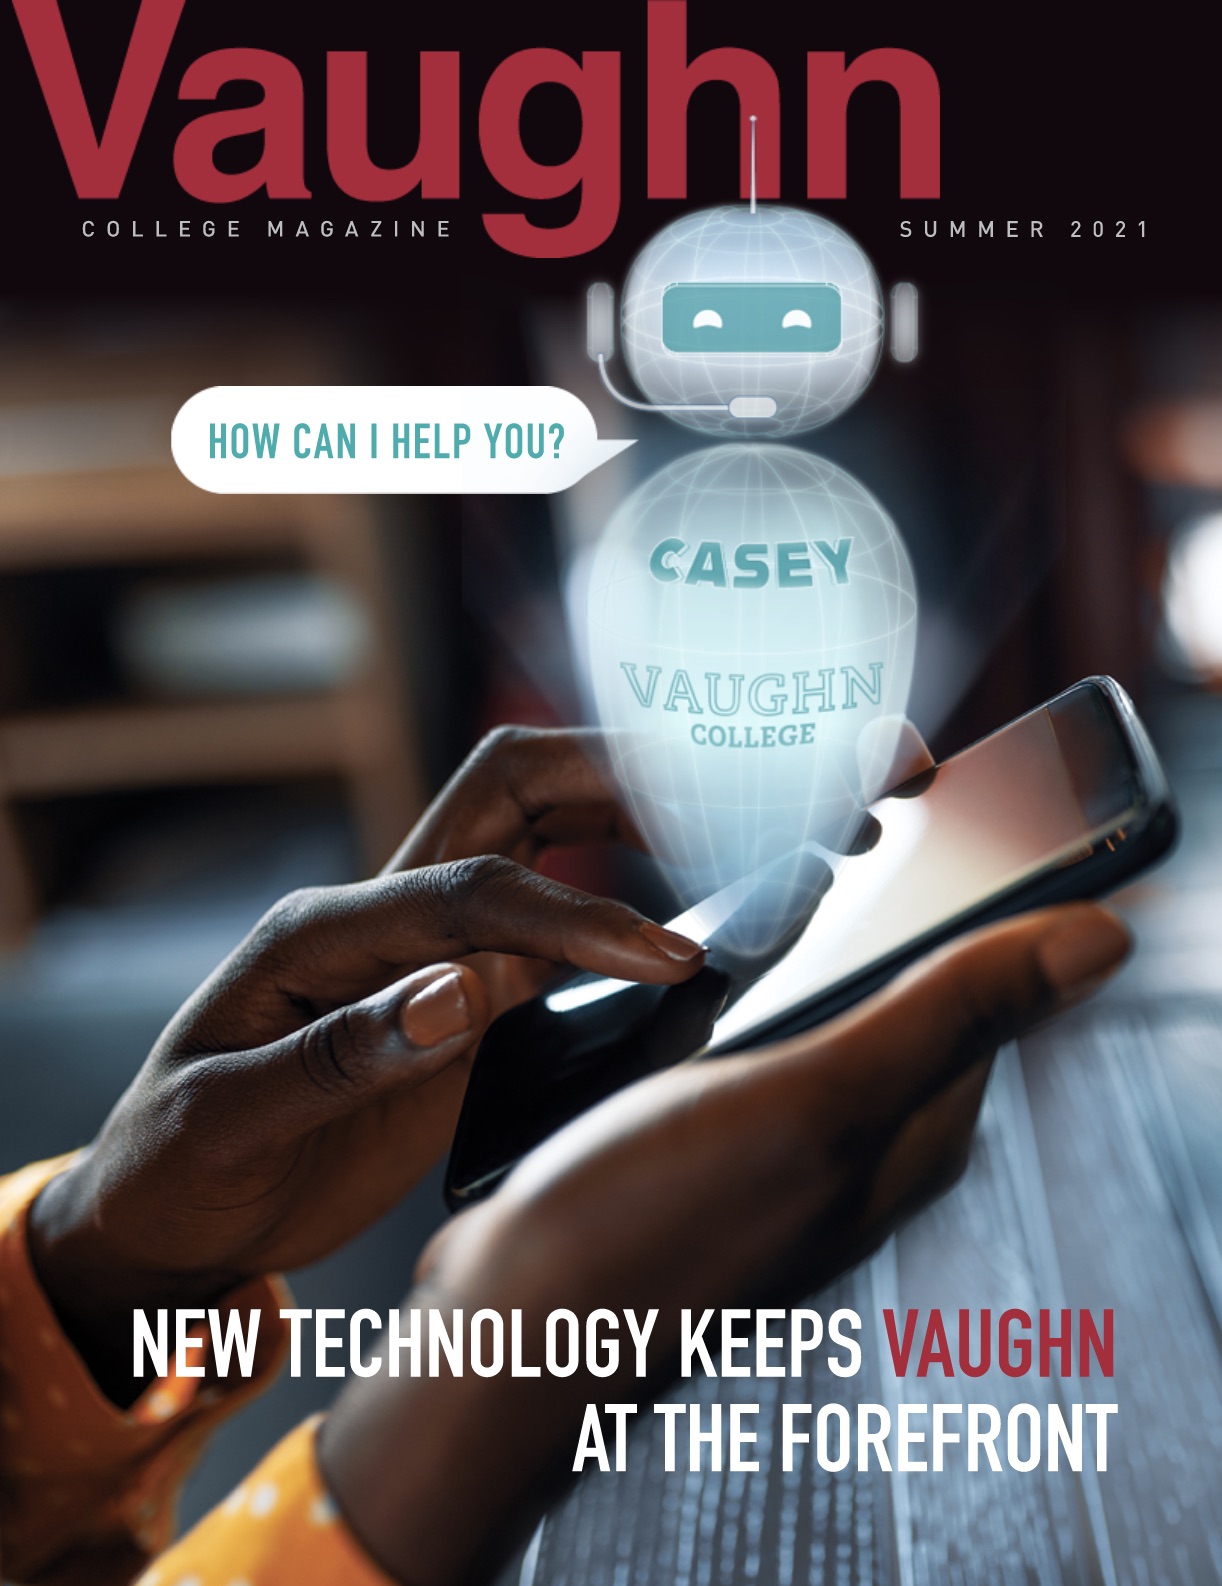 Vaughn College Magazine Summer 2021 Issue